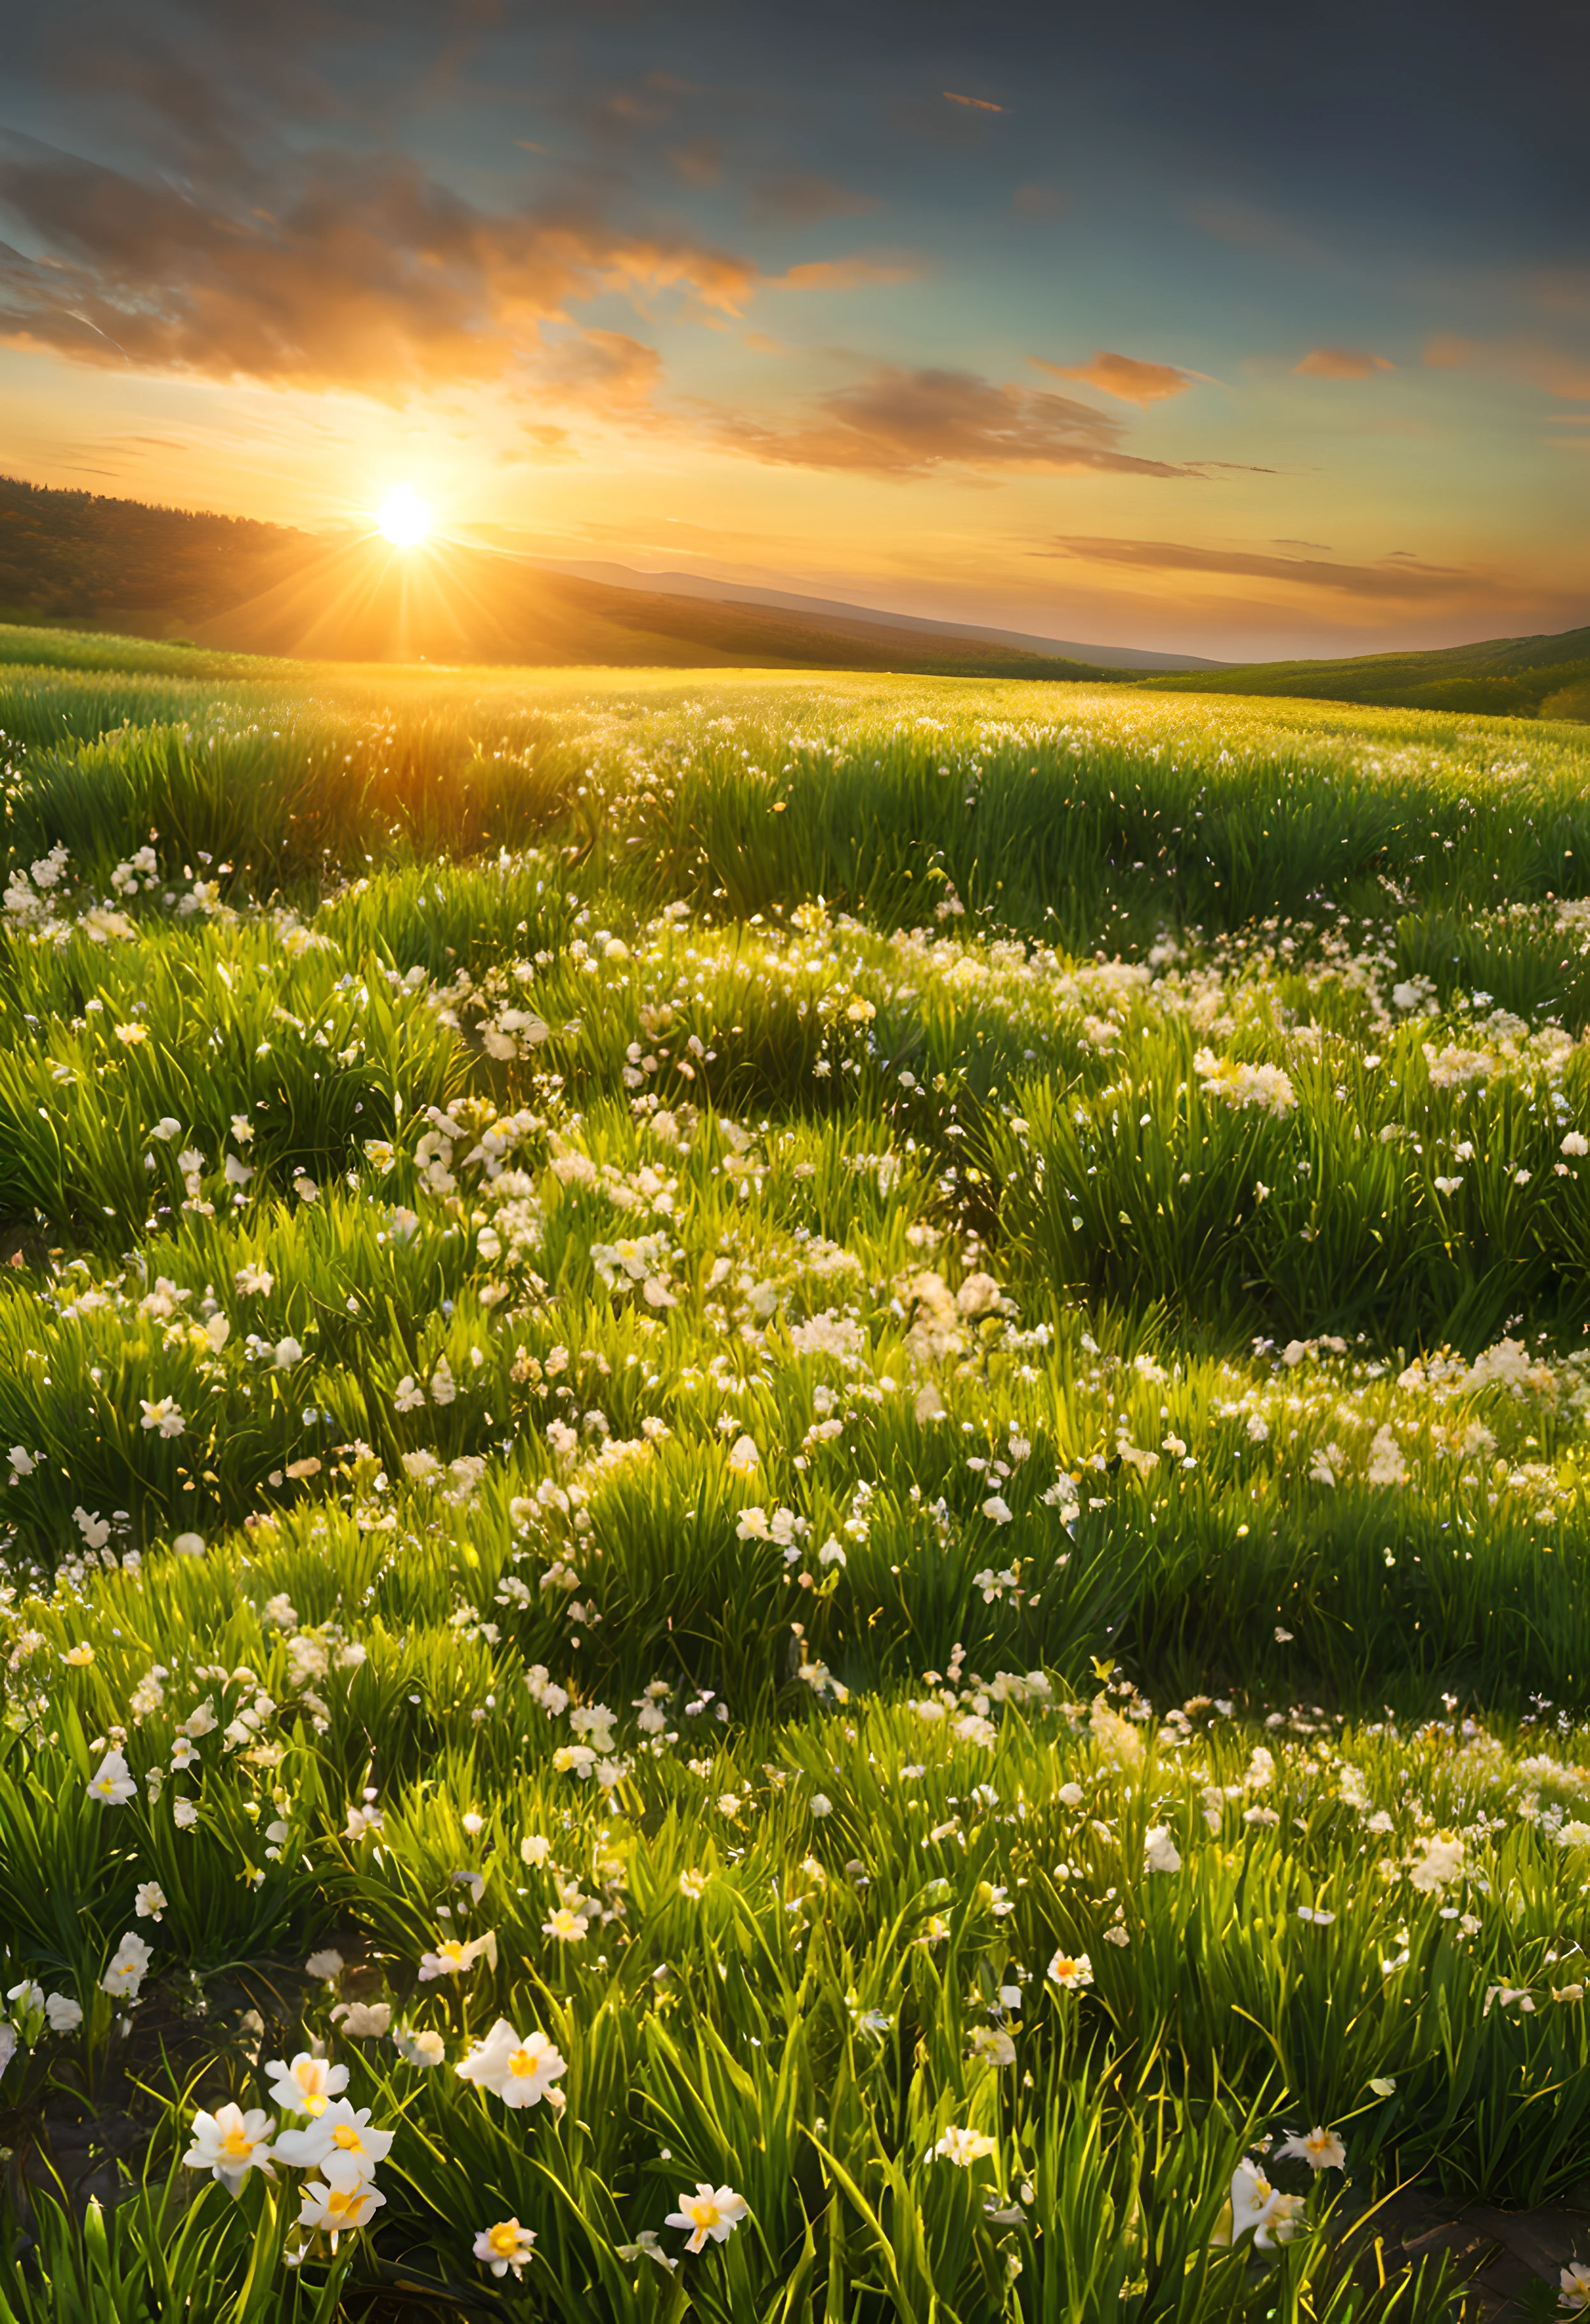 リアルな写真, 傑作, 生命の甘い香りが漂う日の出の春の朝, 広い草原で